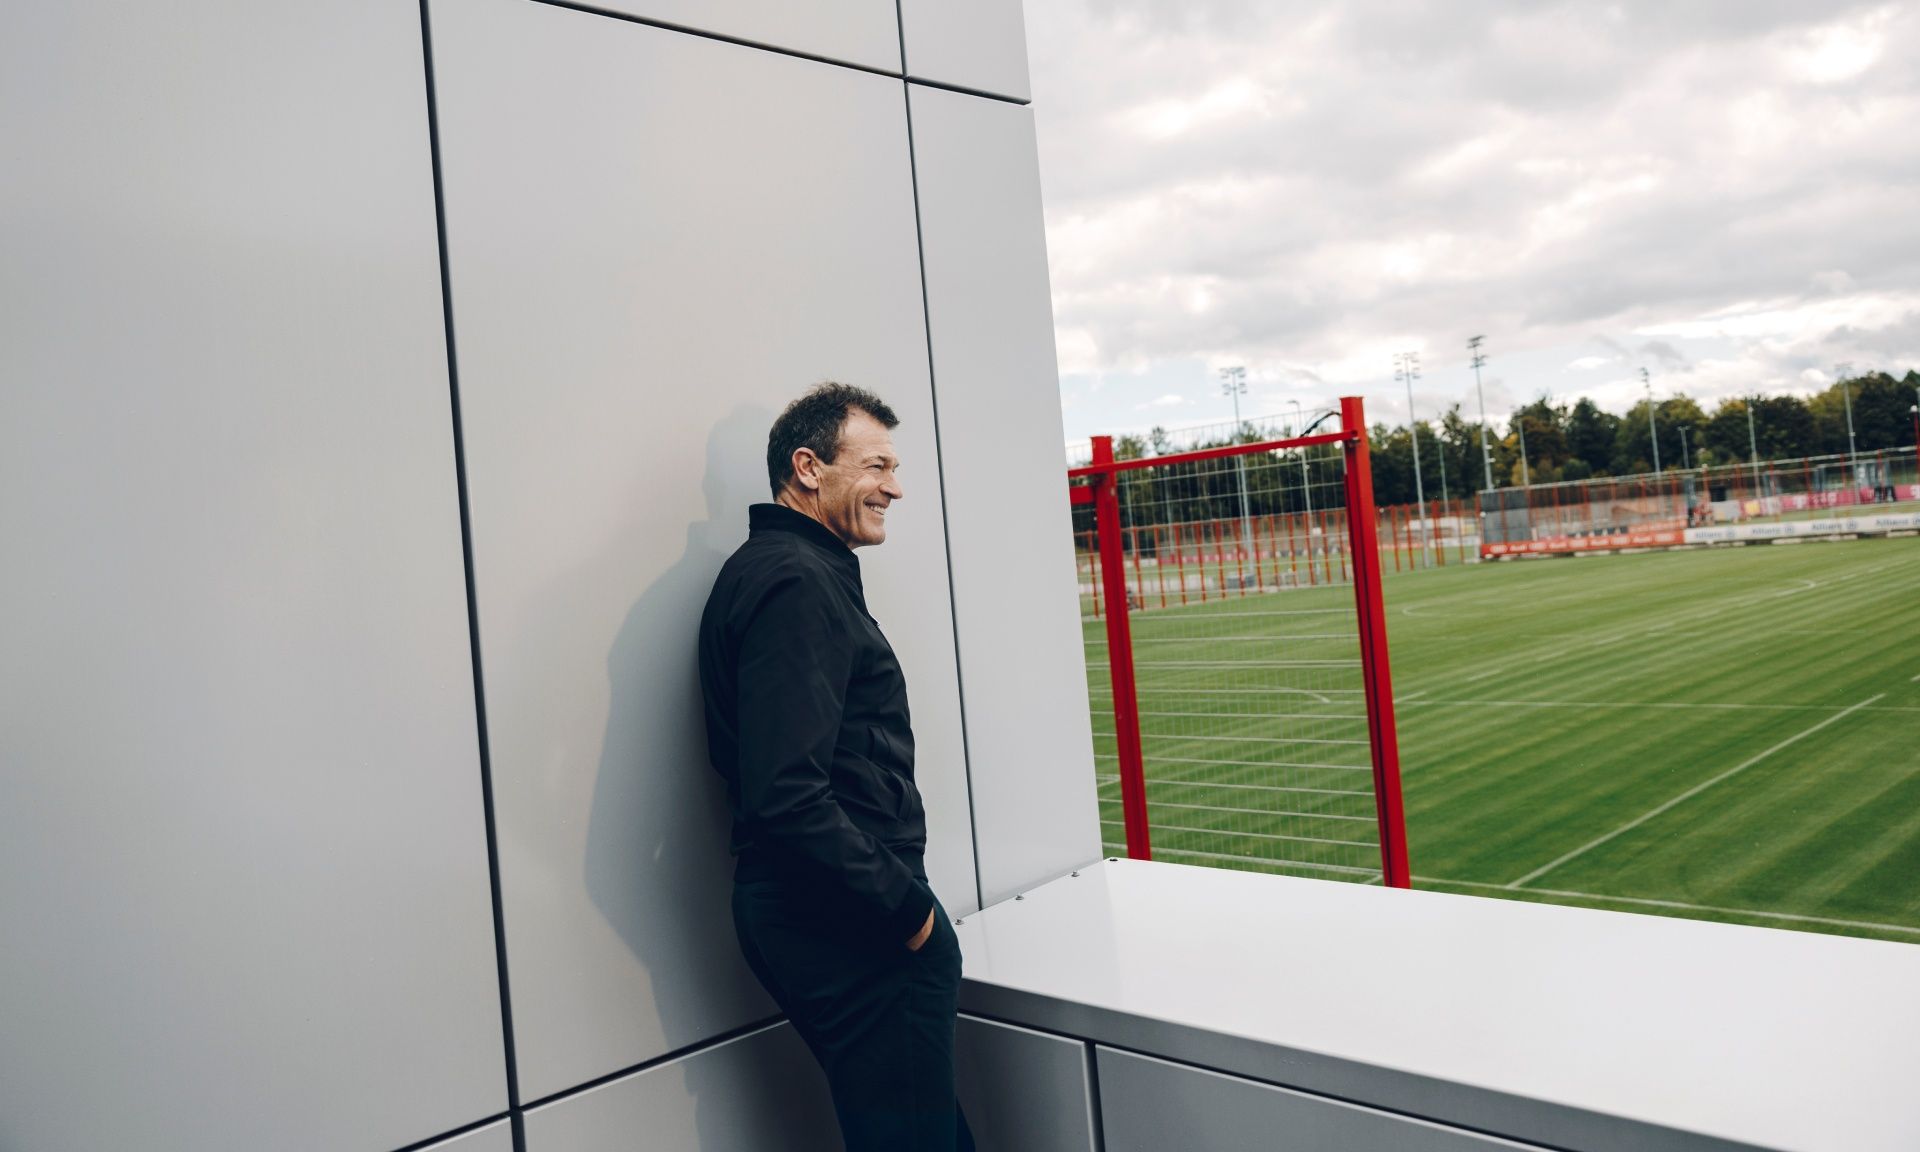 Andreas Jung 从阳台眺望着拜仁慕尼黑足球俱乐部的训练场地。